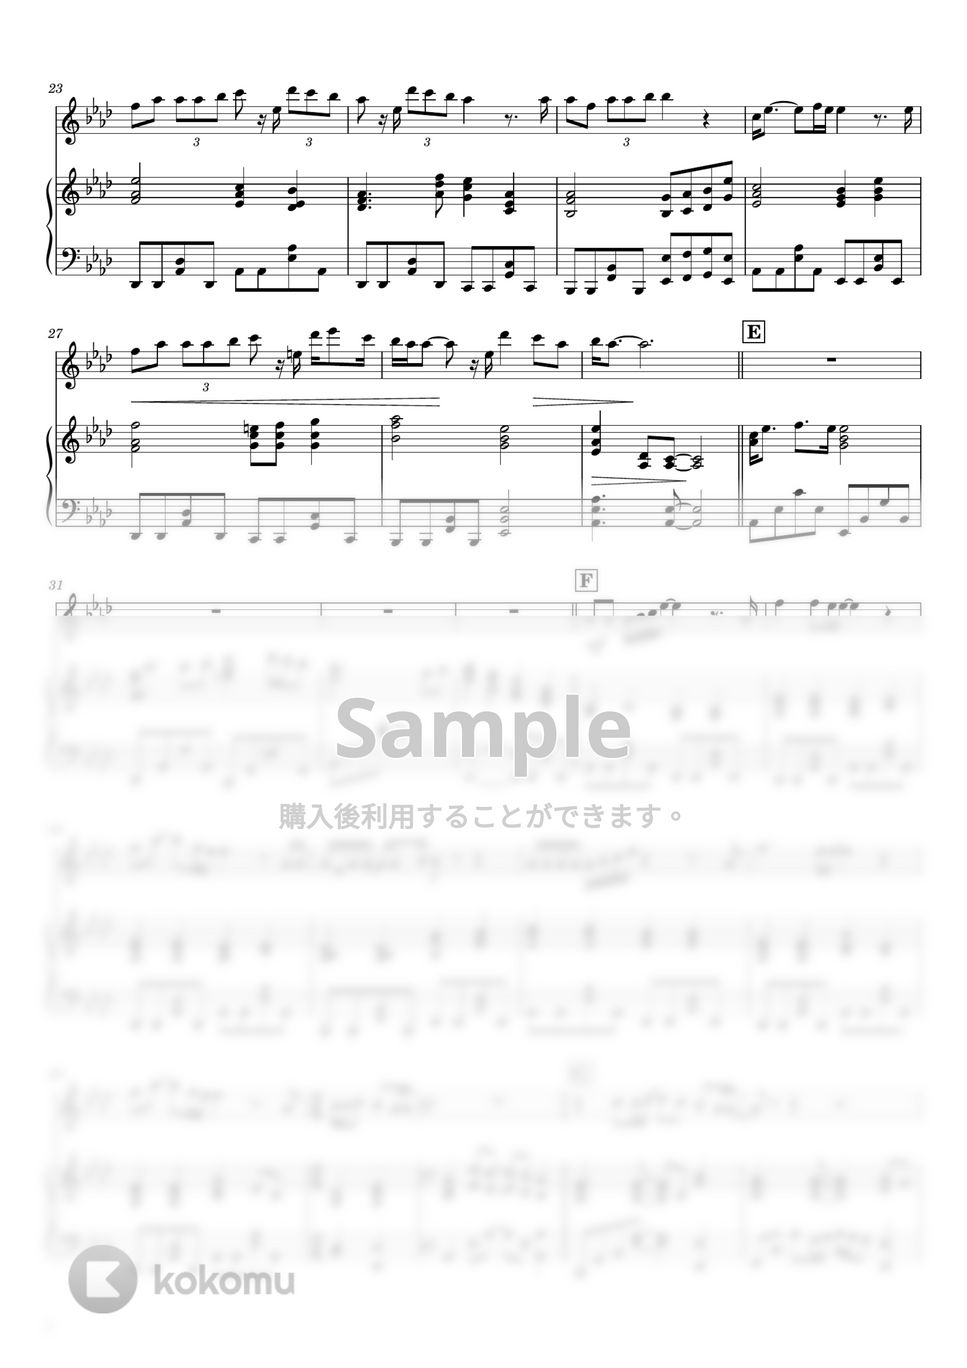 あいみょん - 裸の心 (フルート&ピアノ伴奏) by PiaFlu